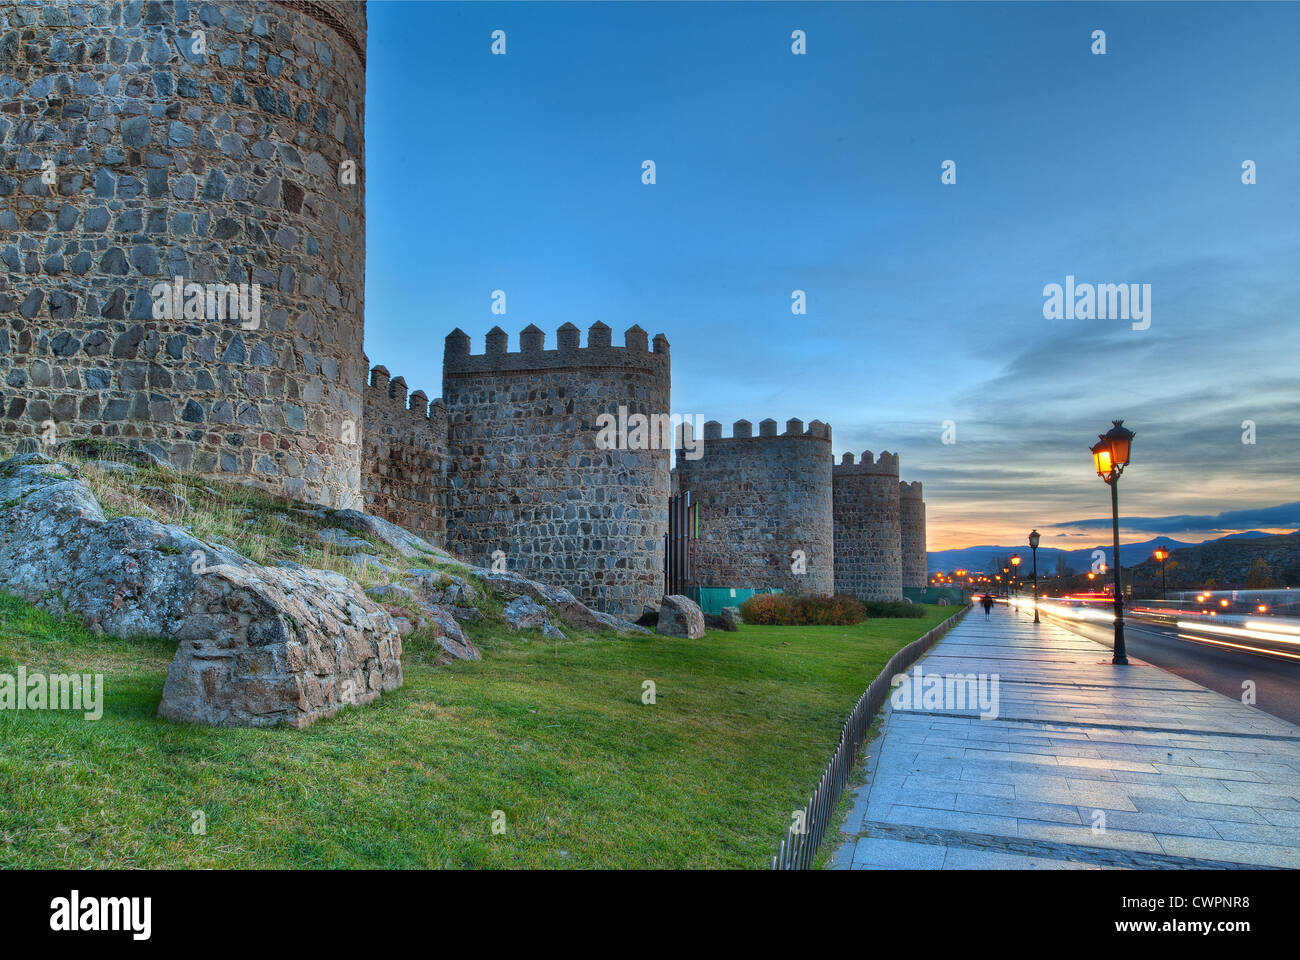 Soir par les remparts de la ville médiévale d'Ávila, Espagne Banque D'Images